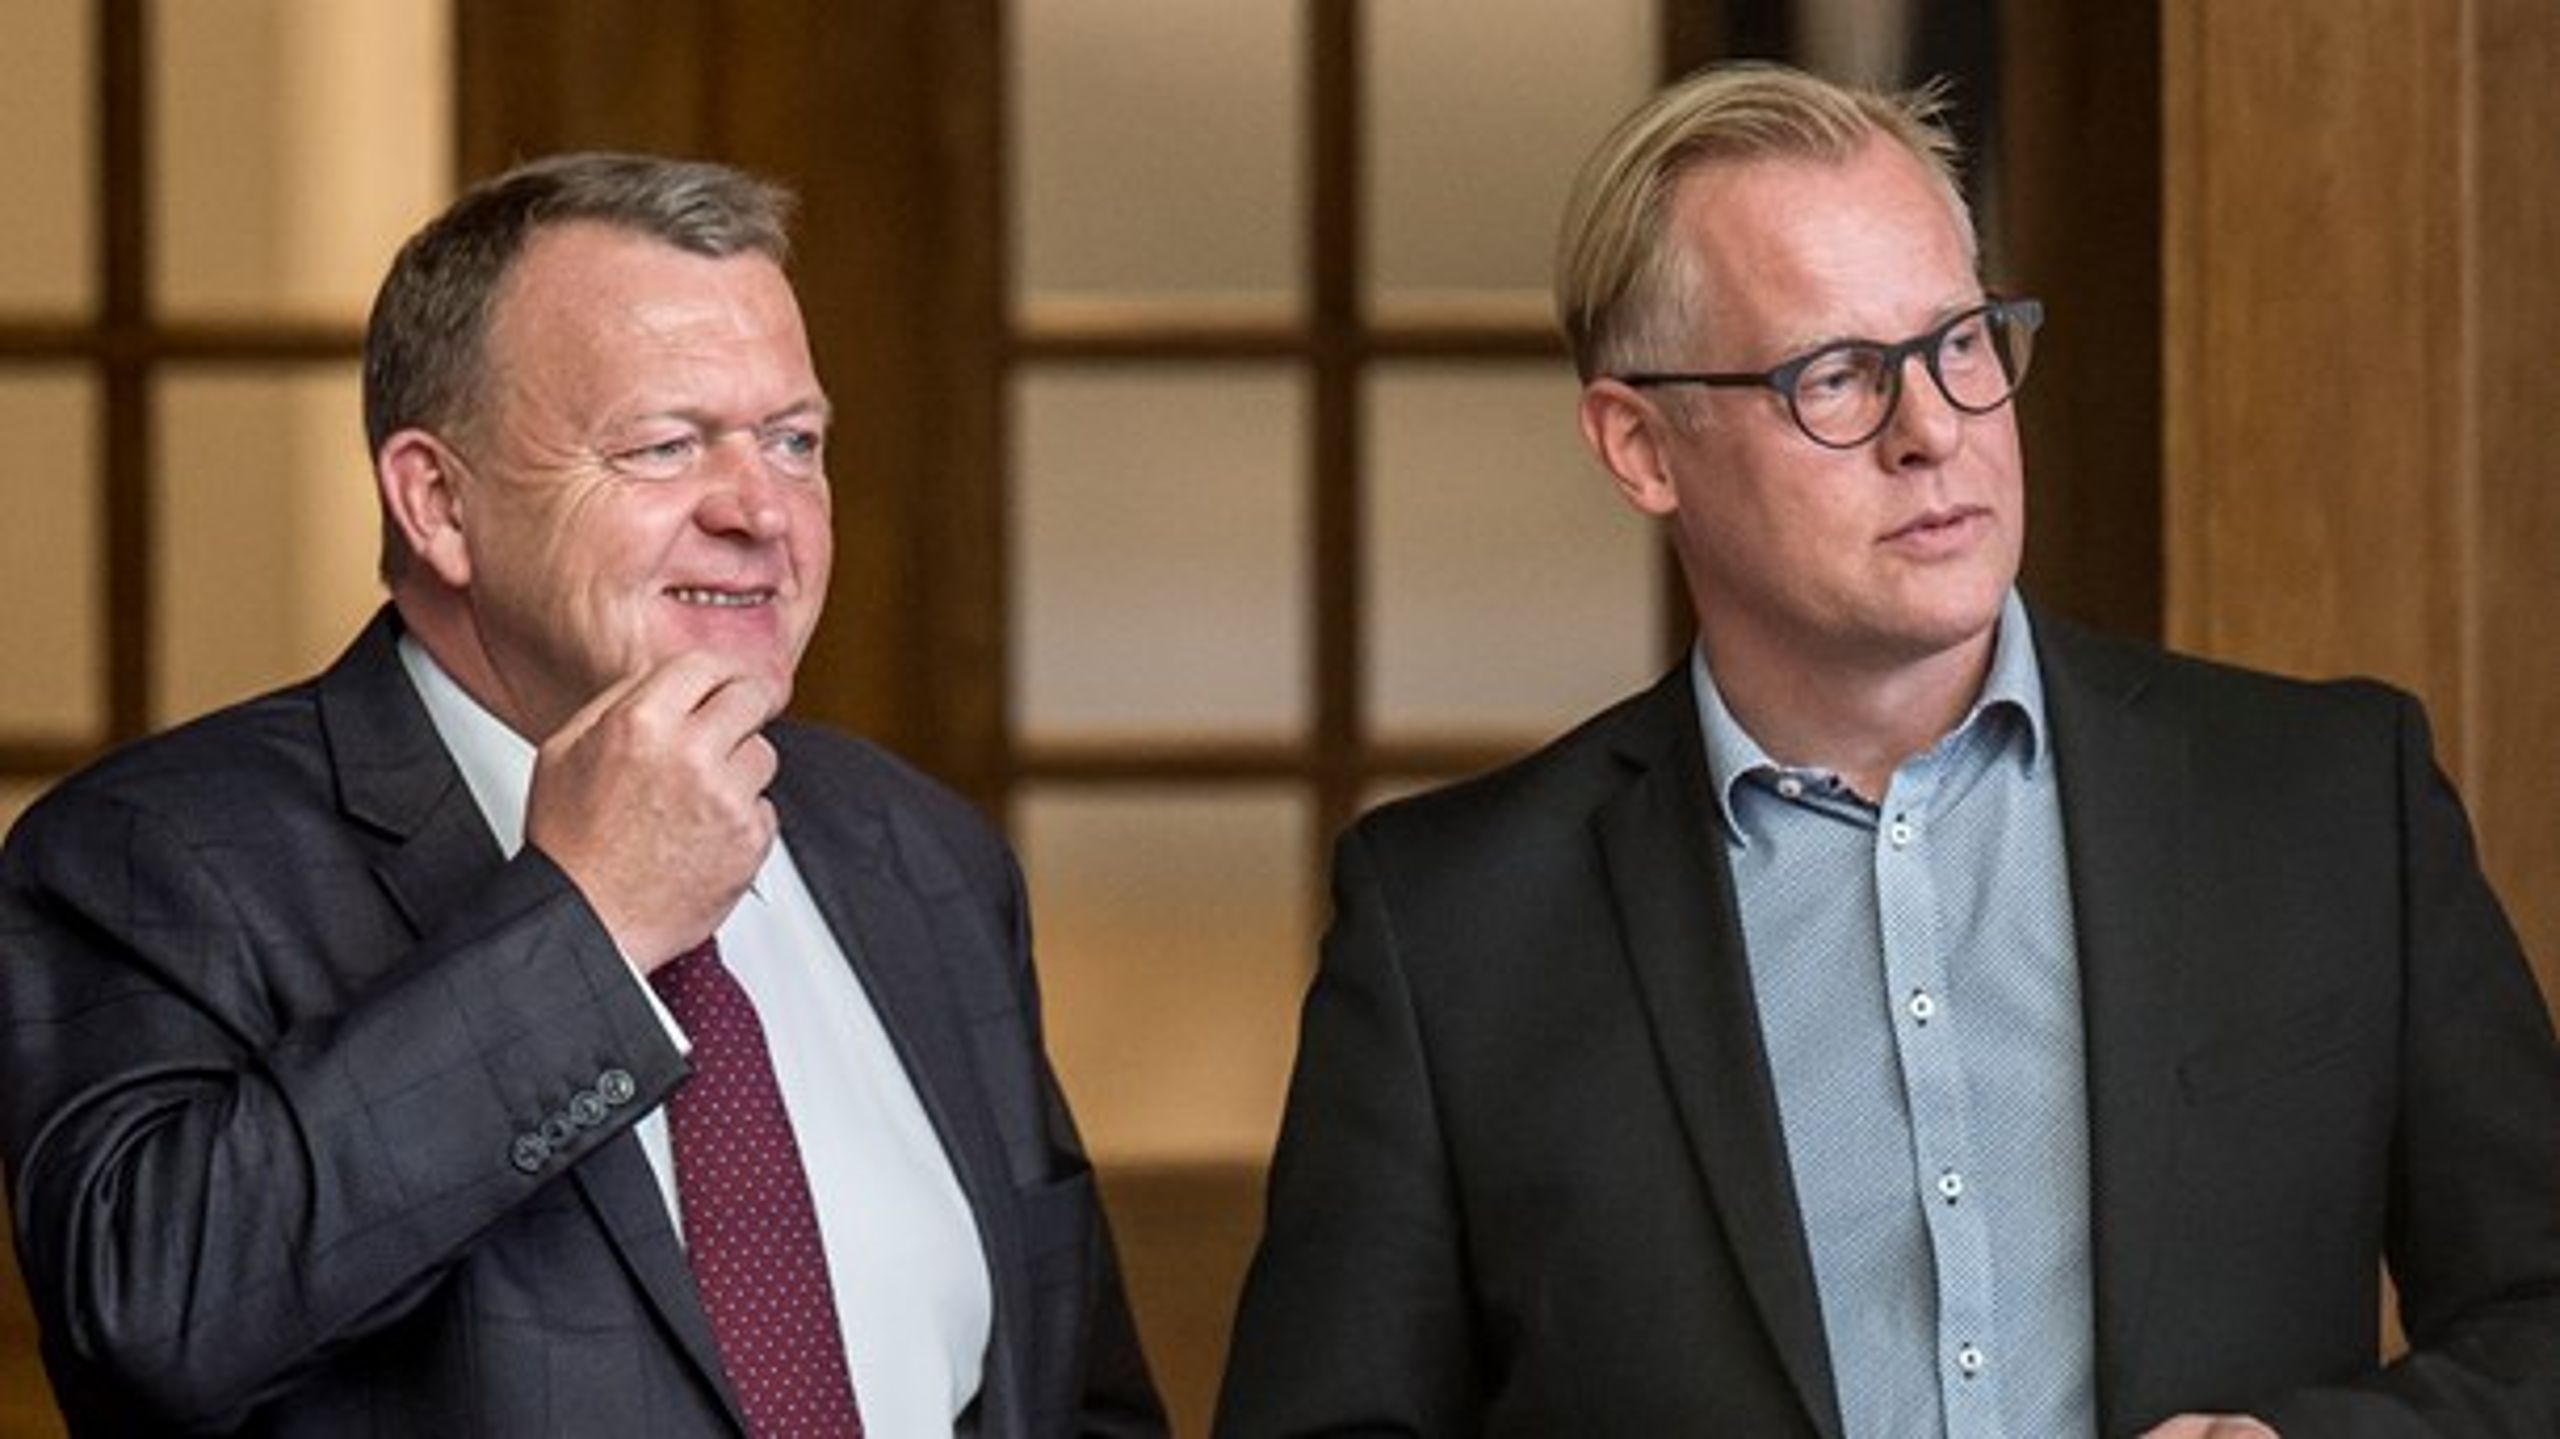 Carl Holst (V) og Lars Løkke Rasmussen (V) ved Folketingets åbning.